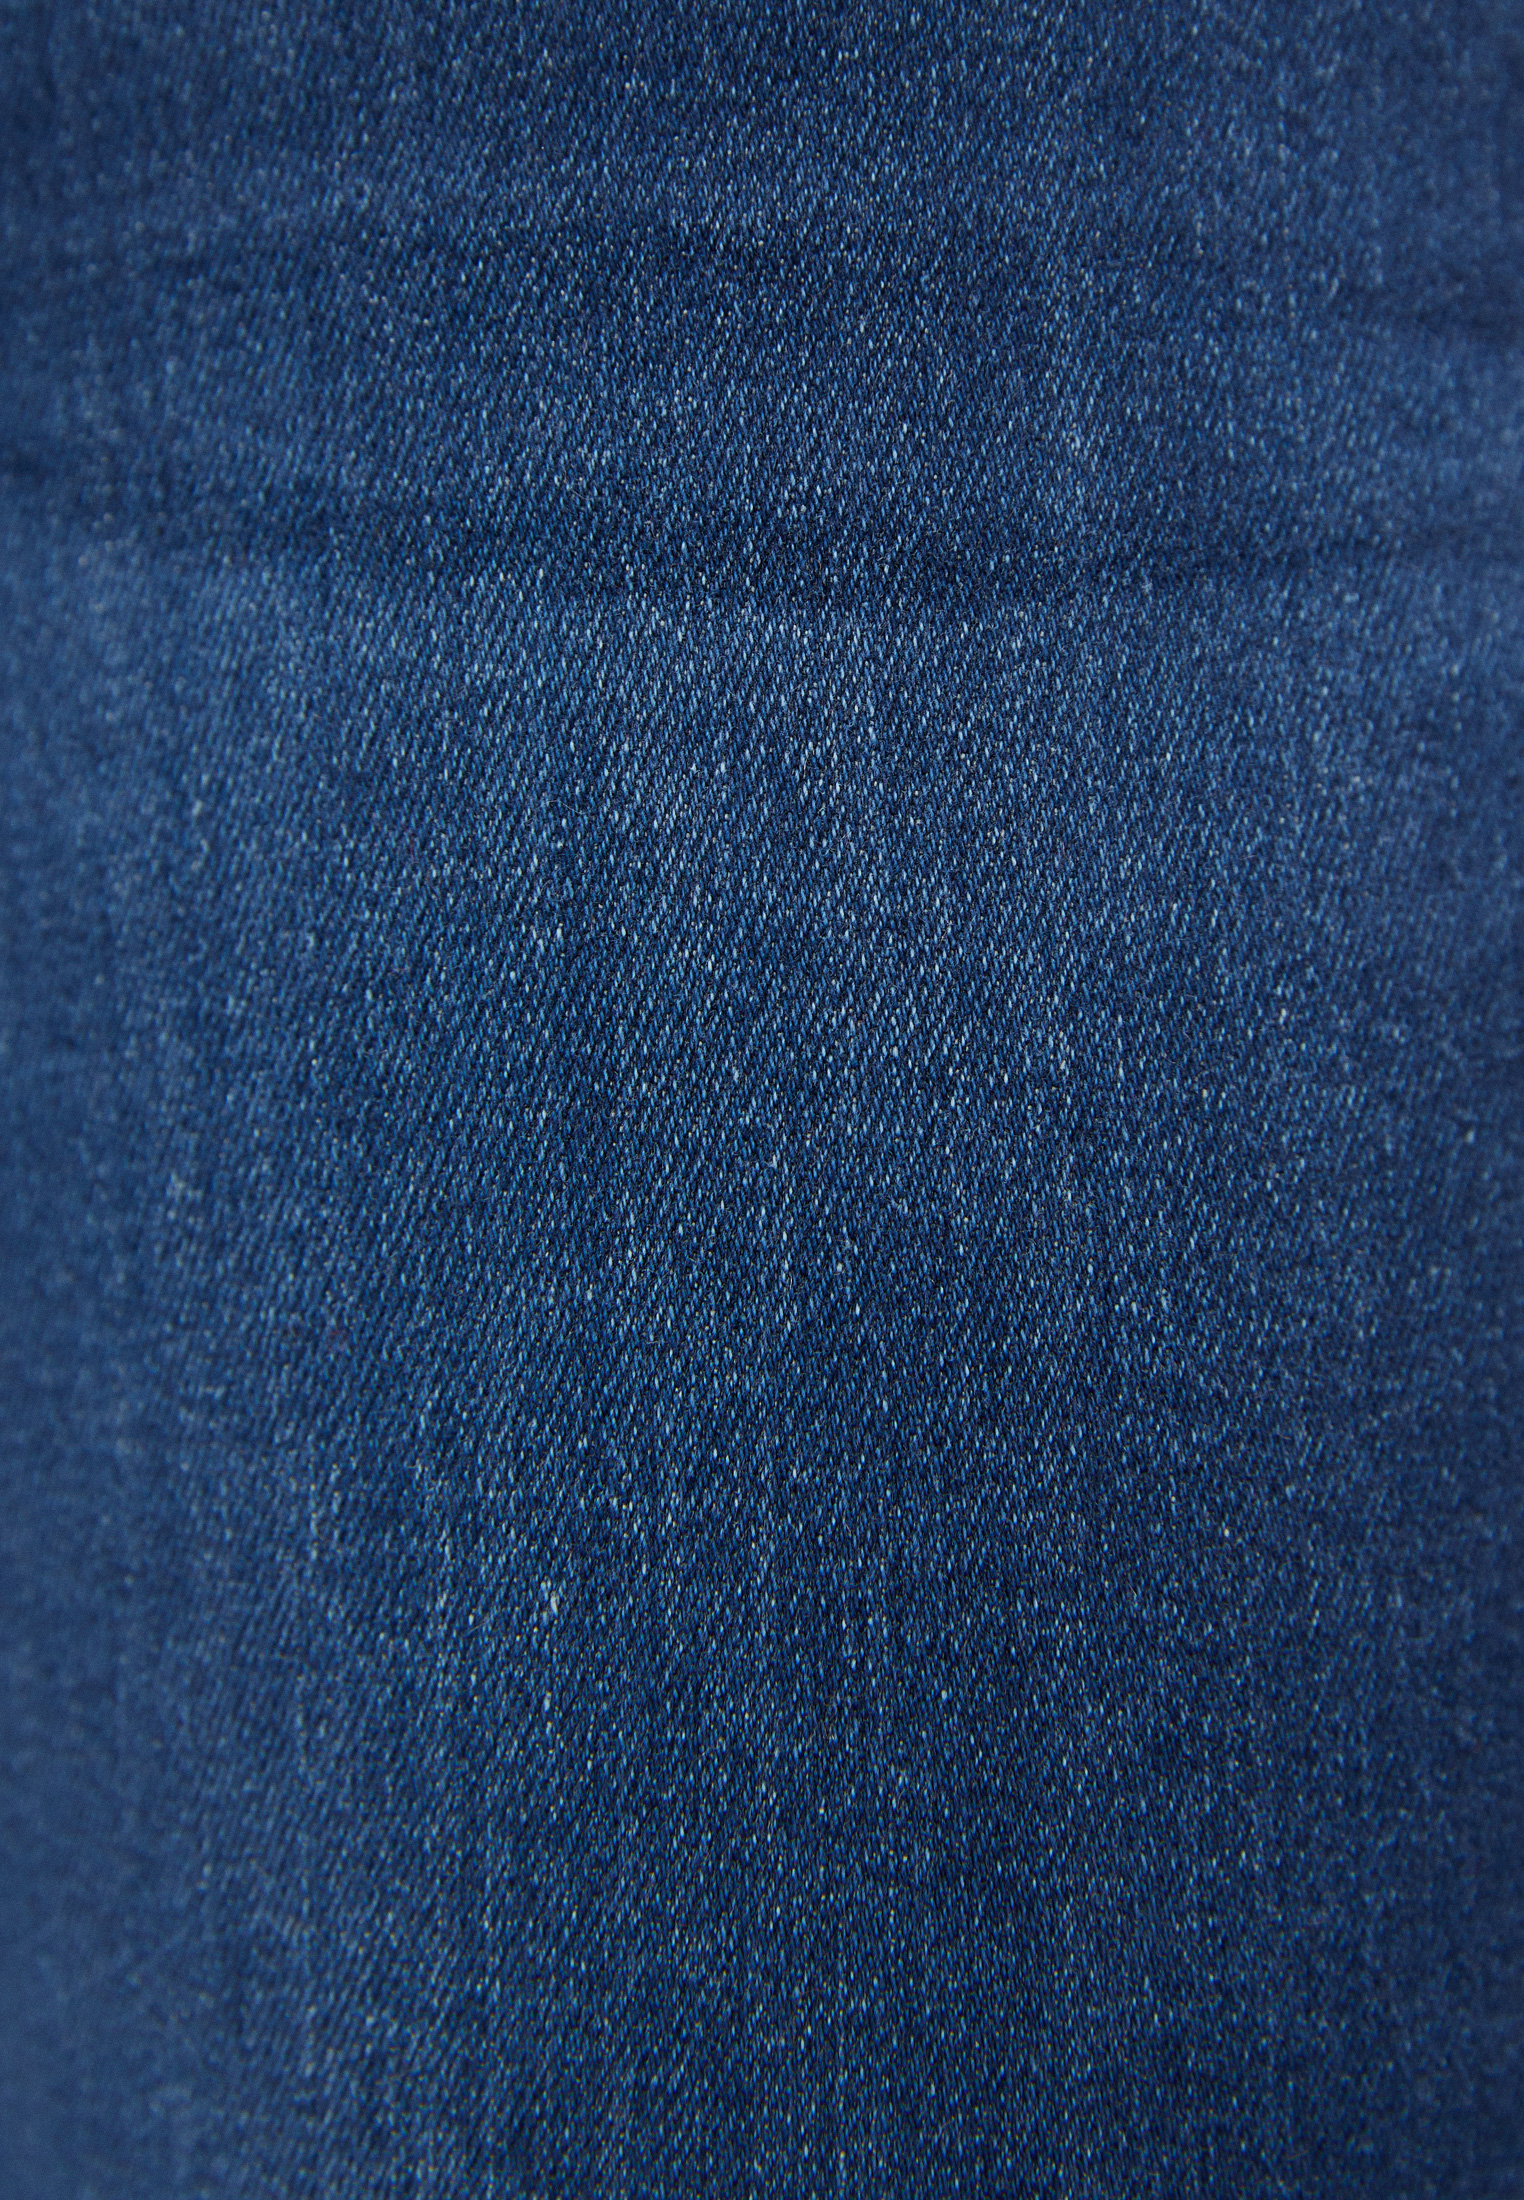 Цвет темных джинс. Джинсовая ткань. Текстура джинсовой ткани. Джинсовая ткань фон. Джинсовая ткань деним.